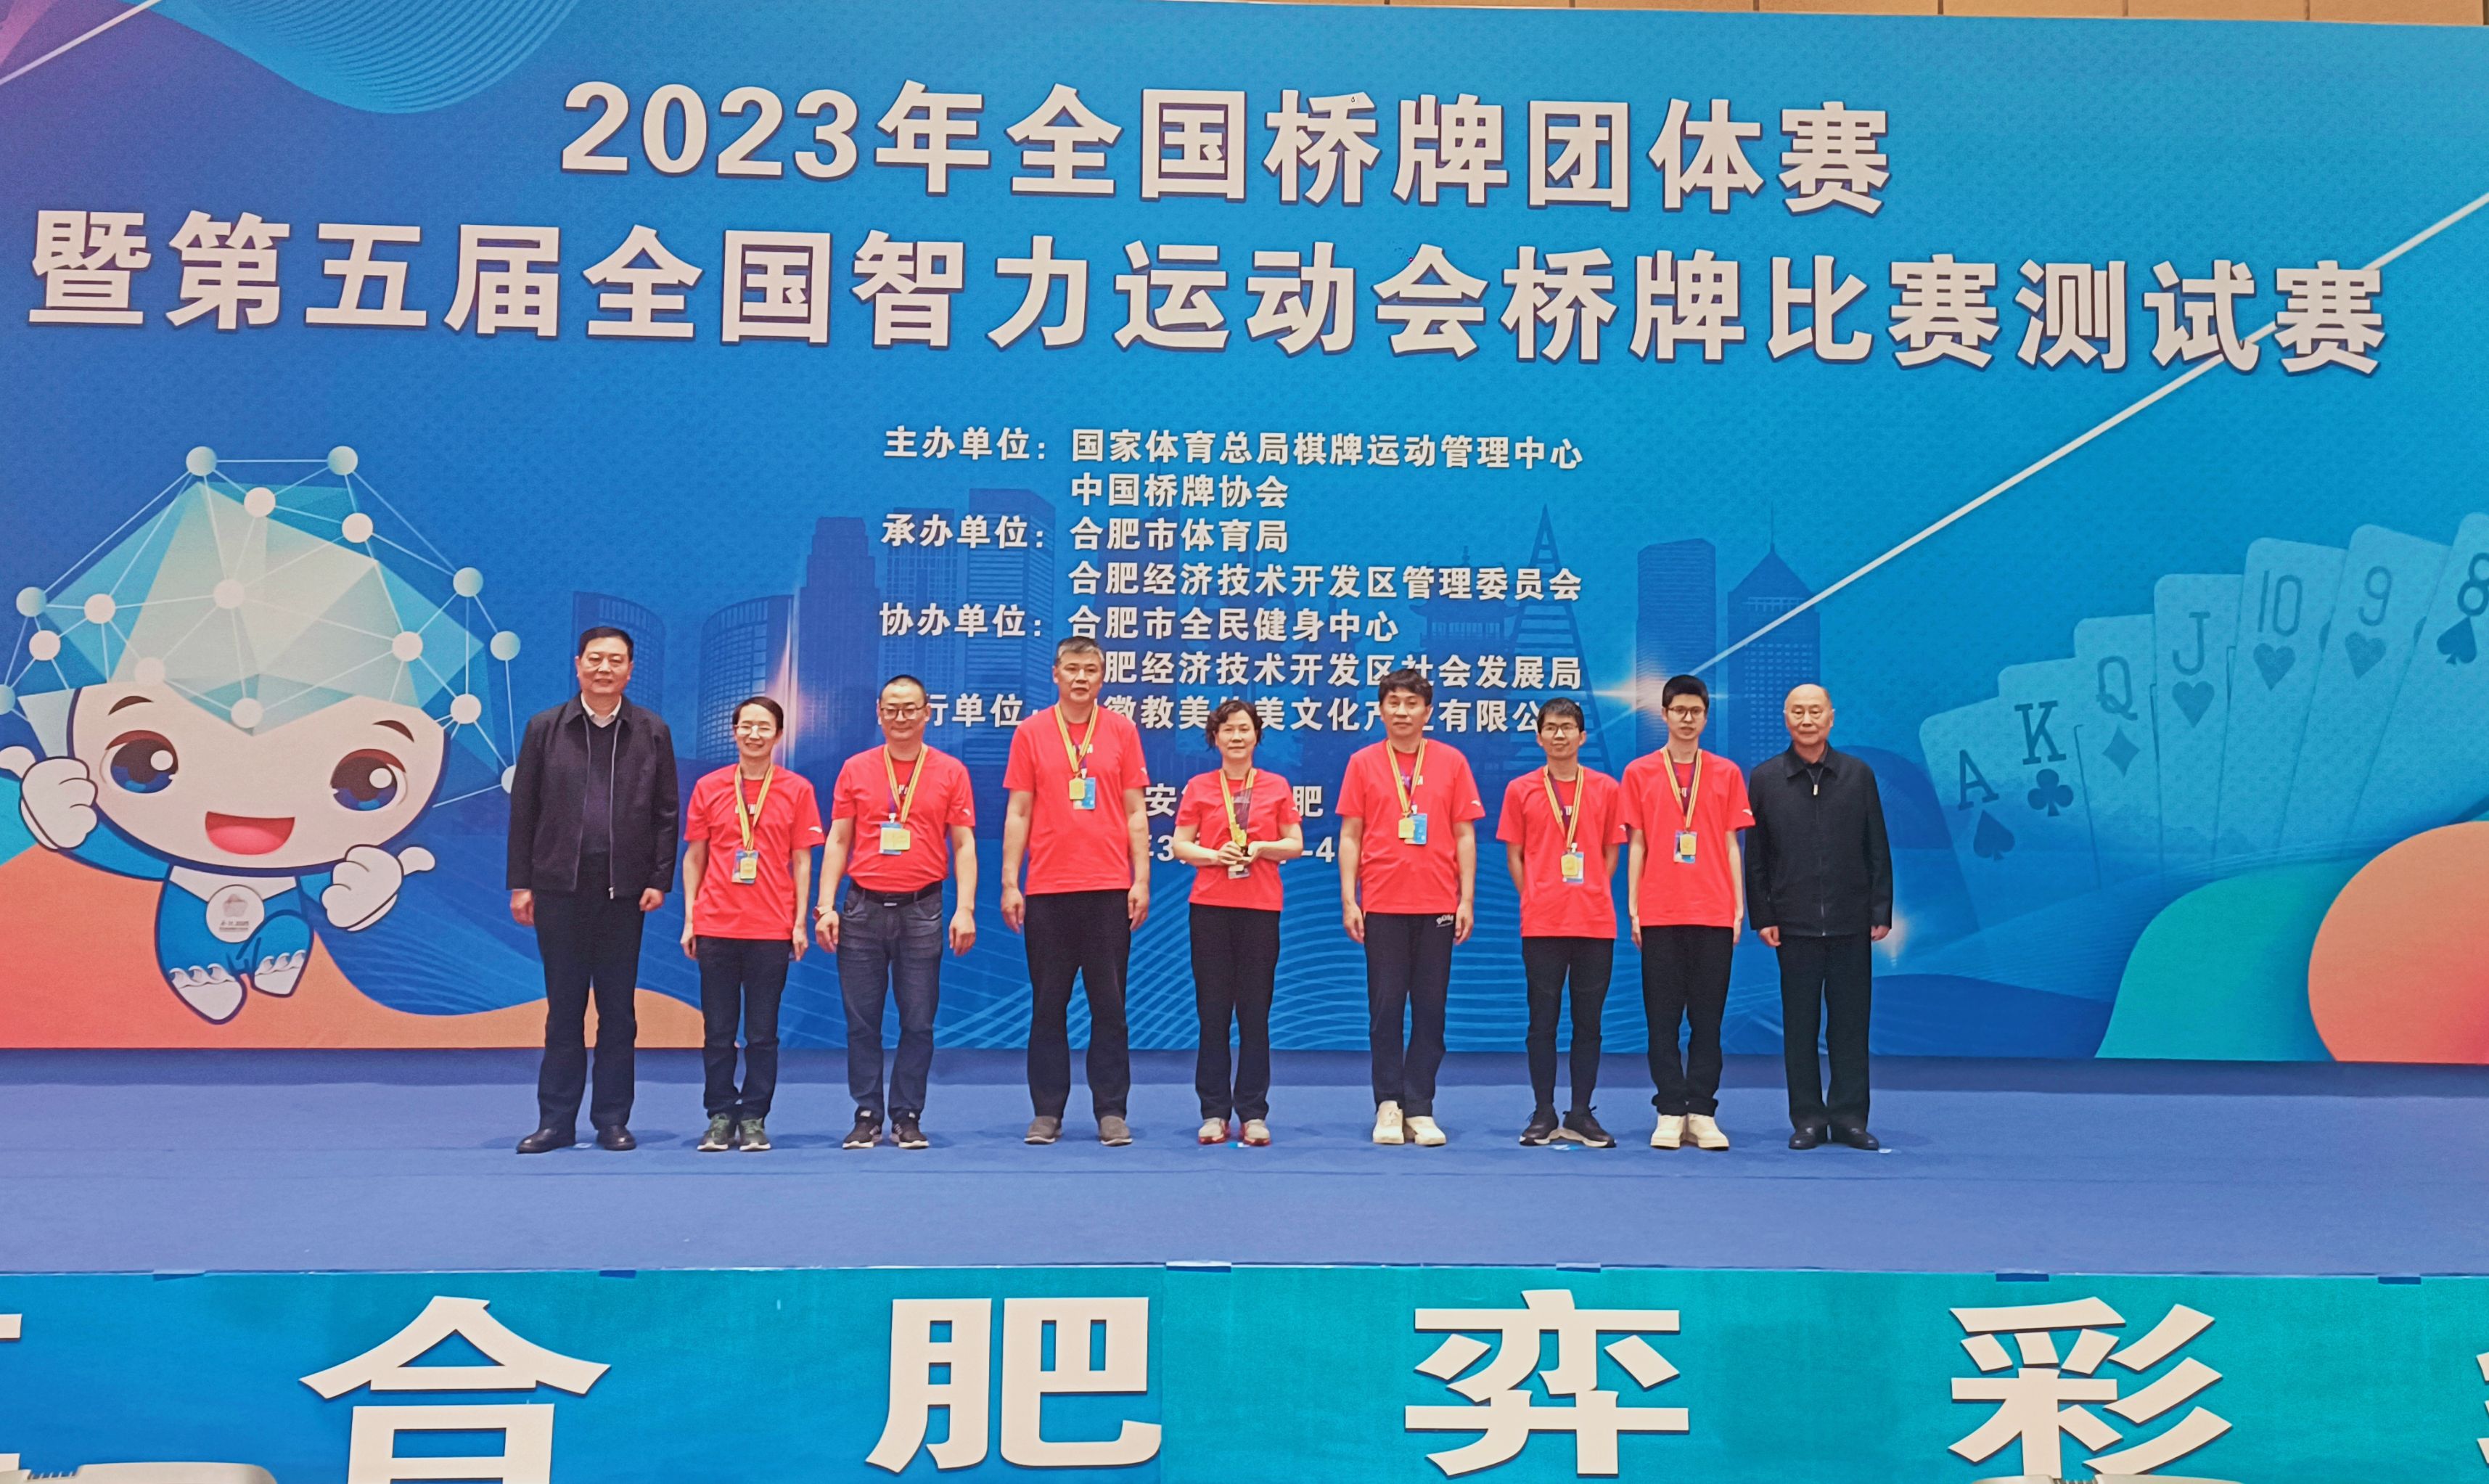 四川成都队、上海（易居）队分获全国桥牌团体赛男甲、女甲冠军